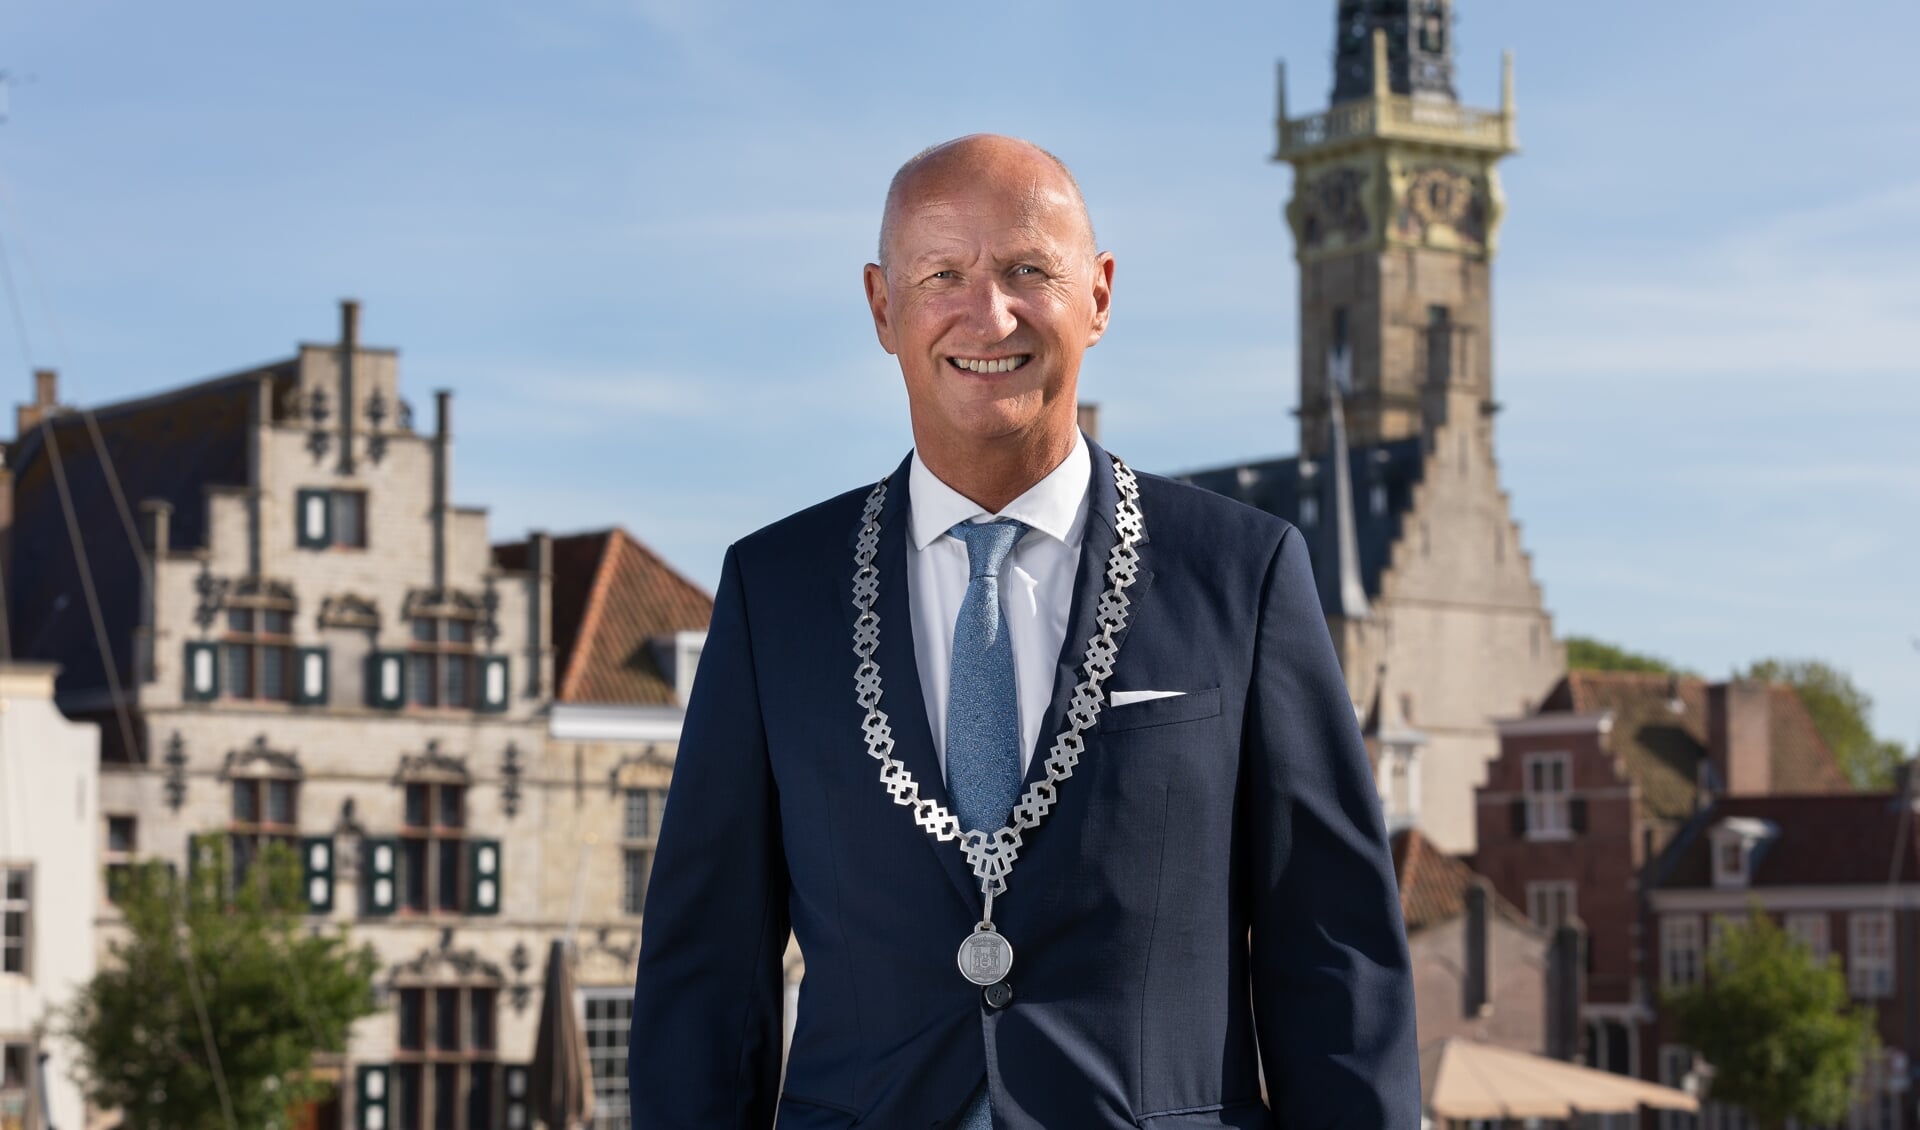 Burgemeester Rob van der Zwaag